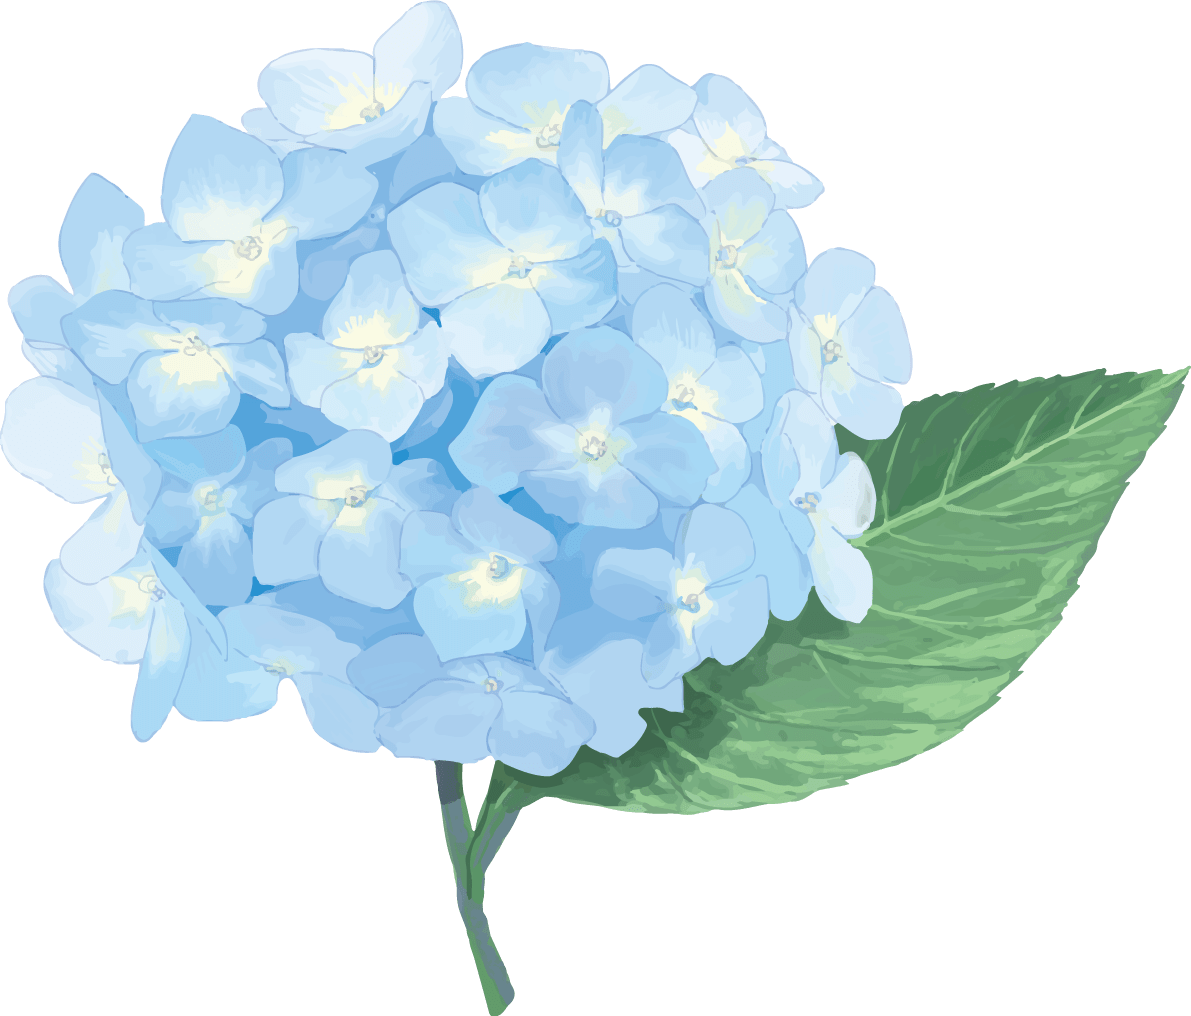 时尚漂亮的浅蓝色系的绣球花插图(梅雨